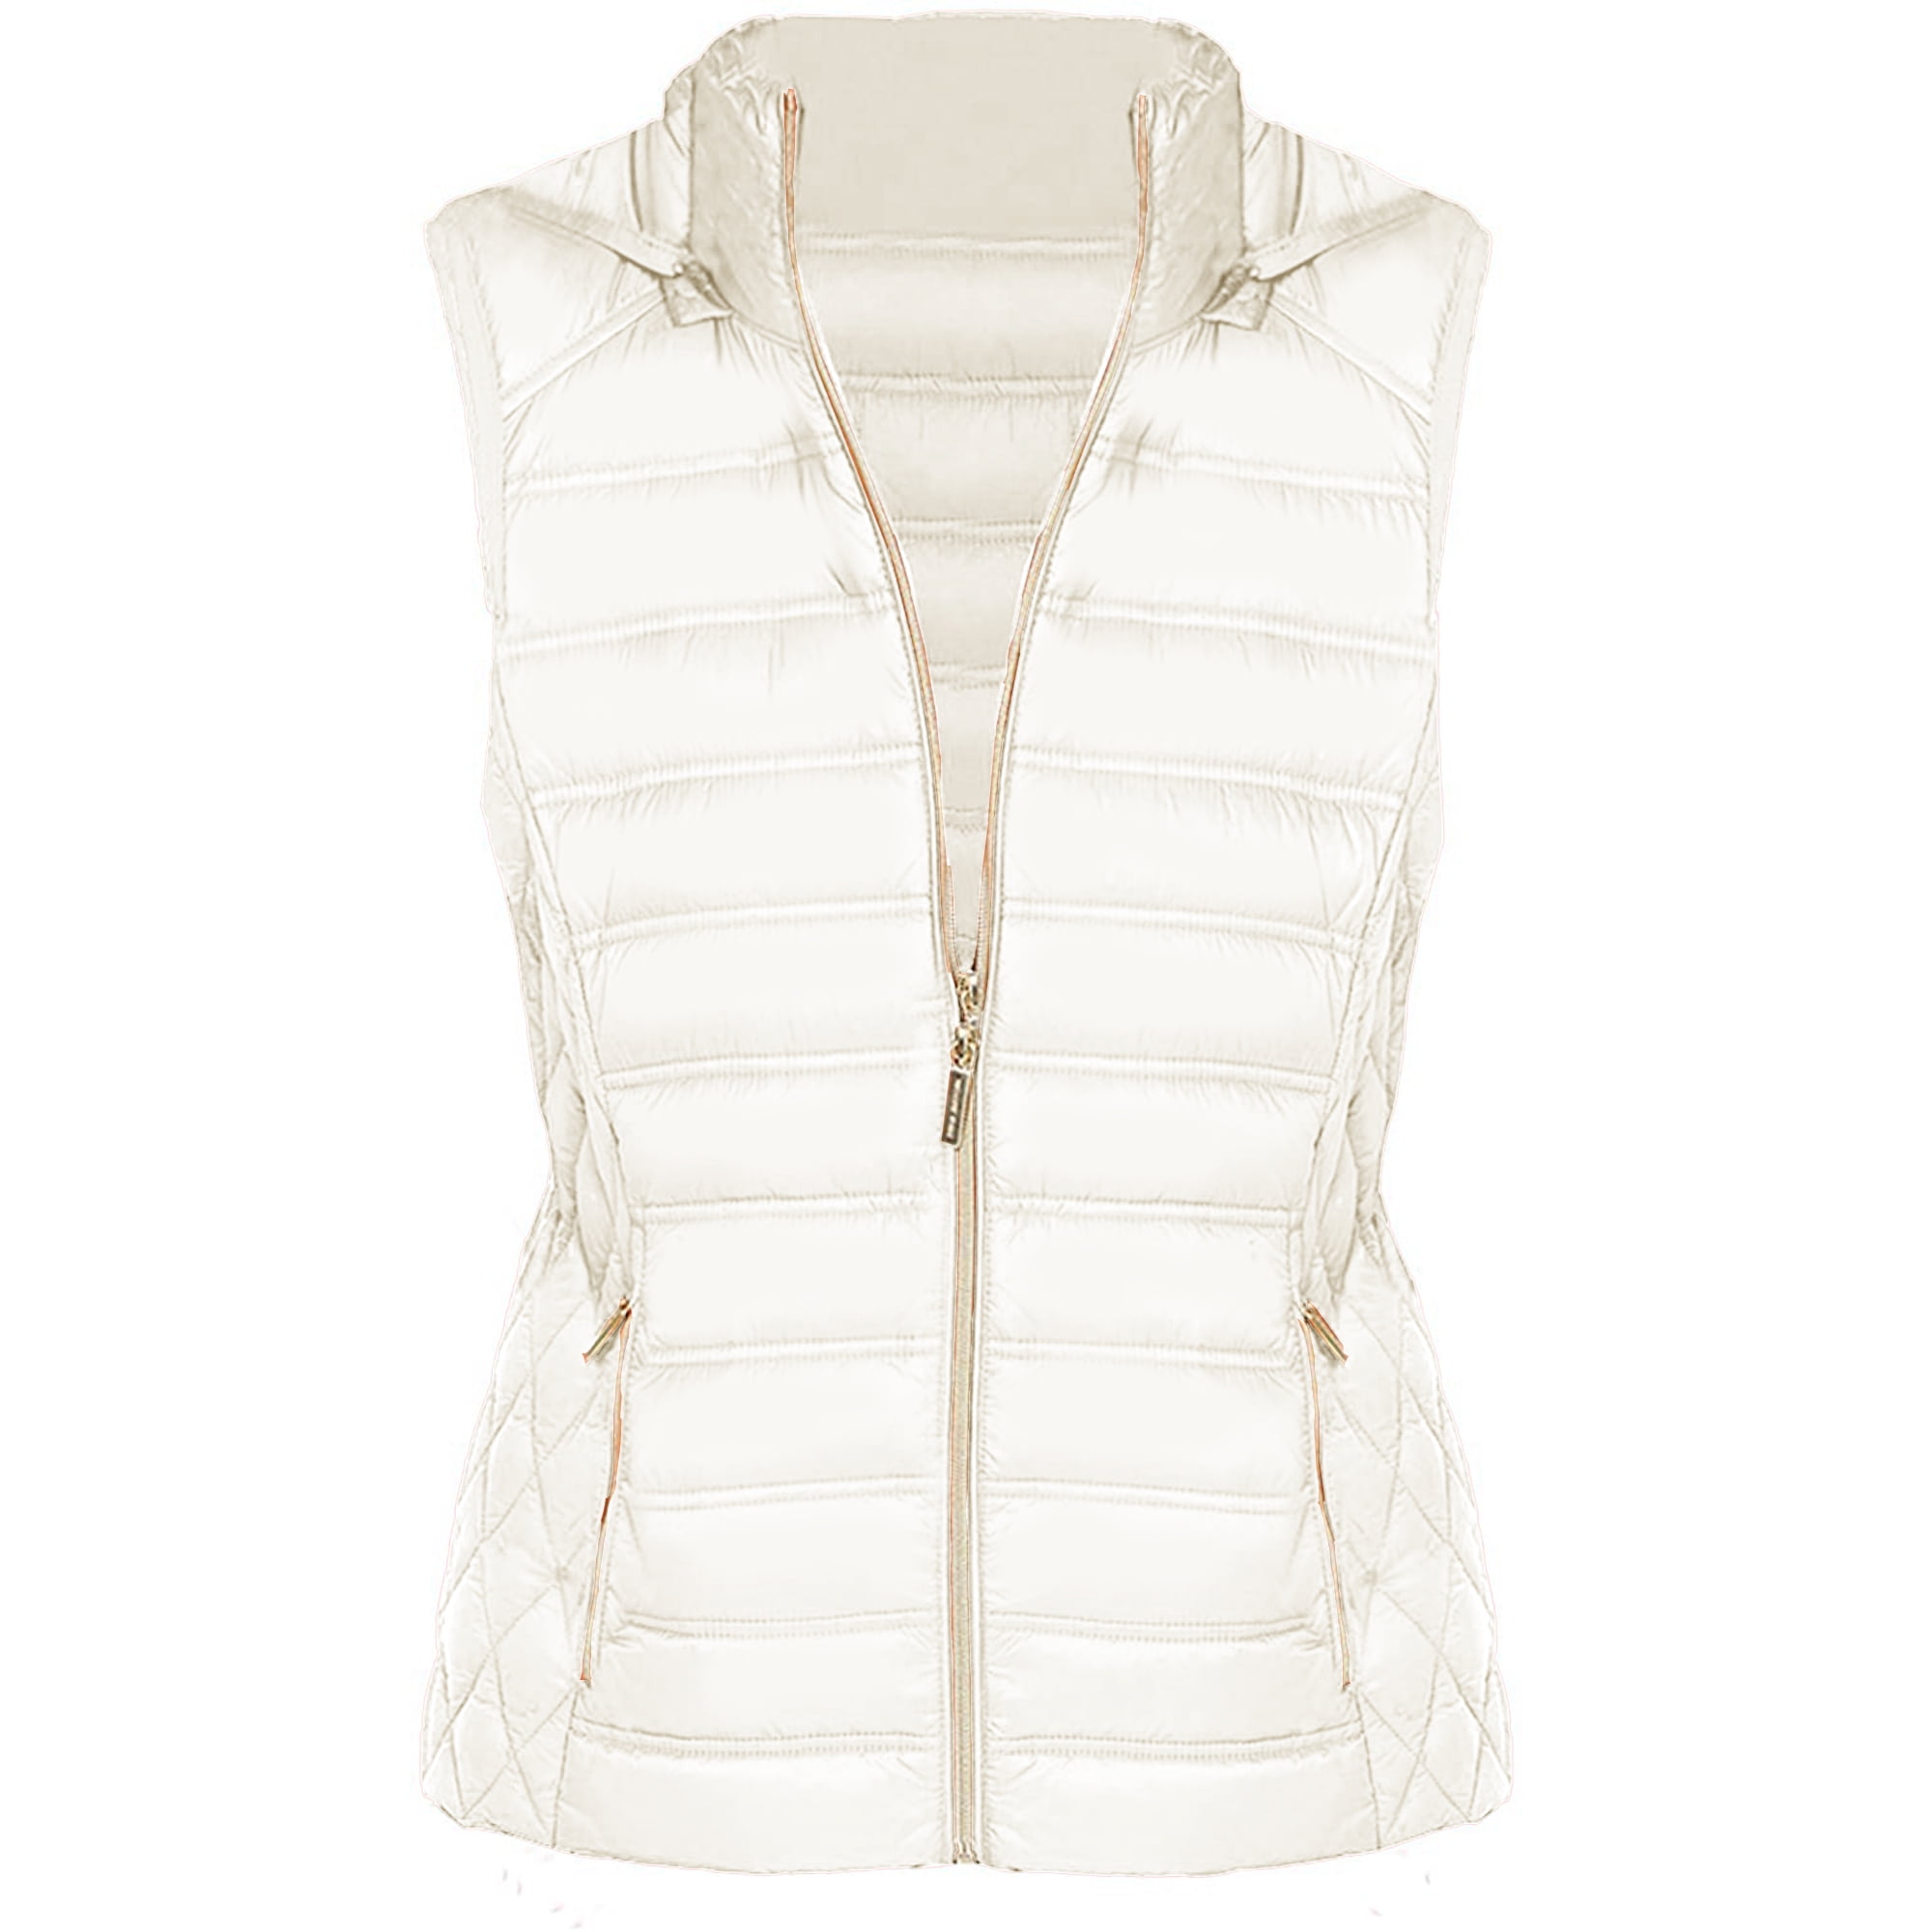 Michael Kors Bone White Winter Vest for Women - Sleeveless Women Down ...